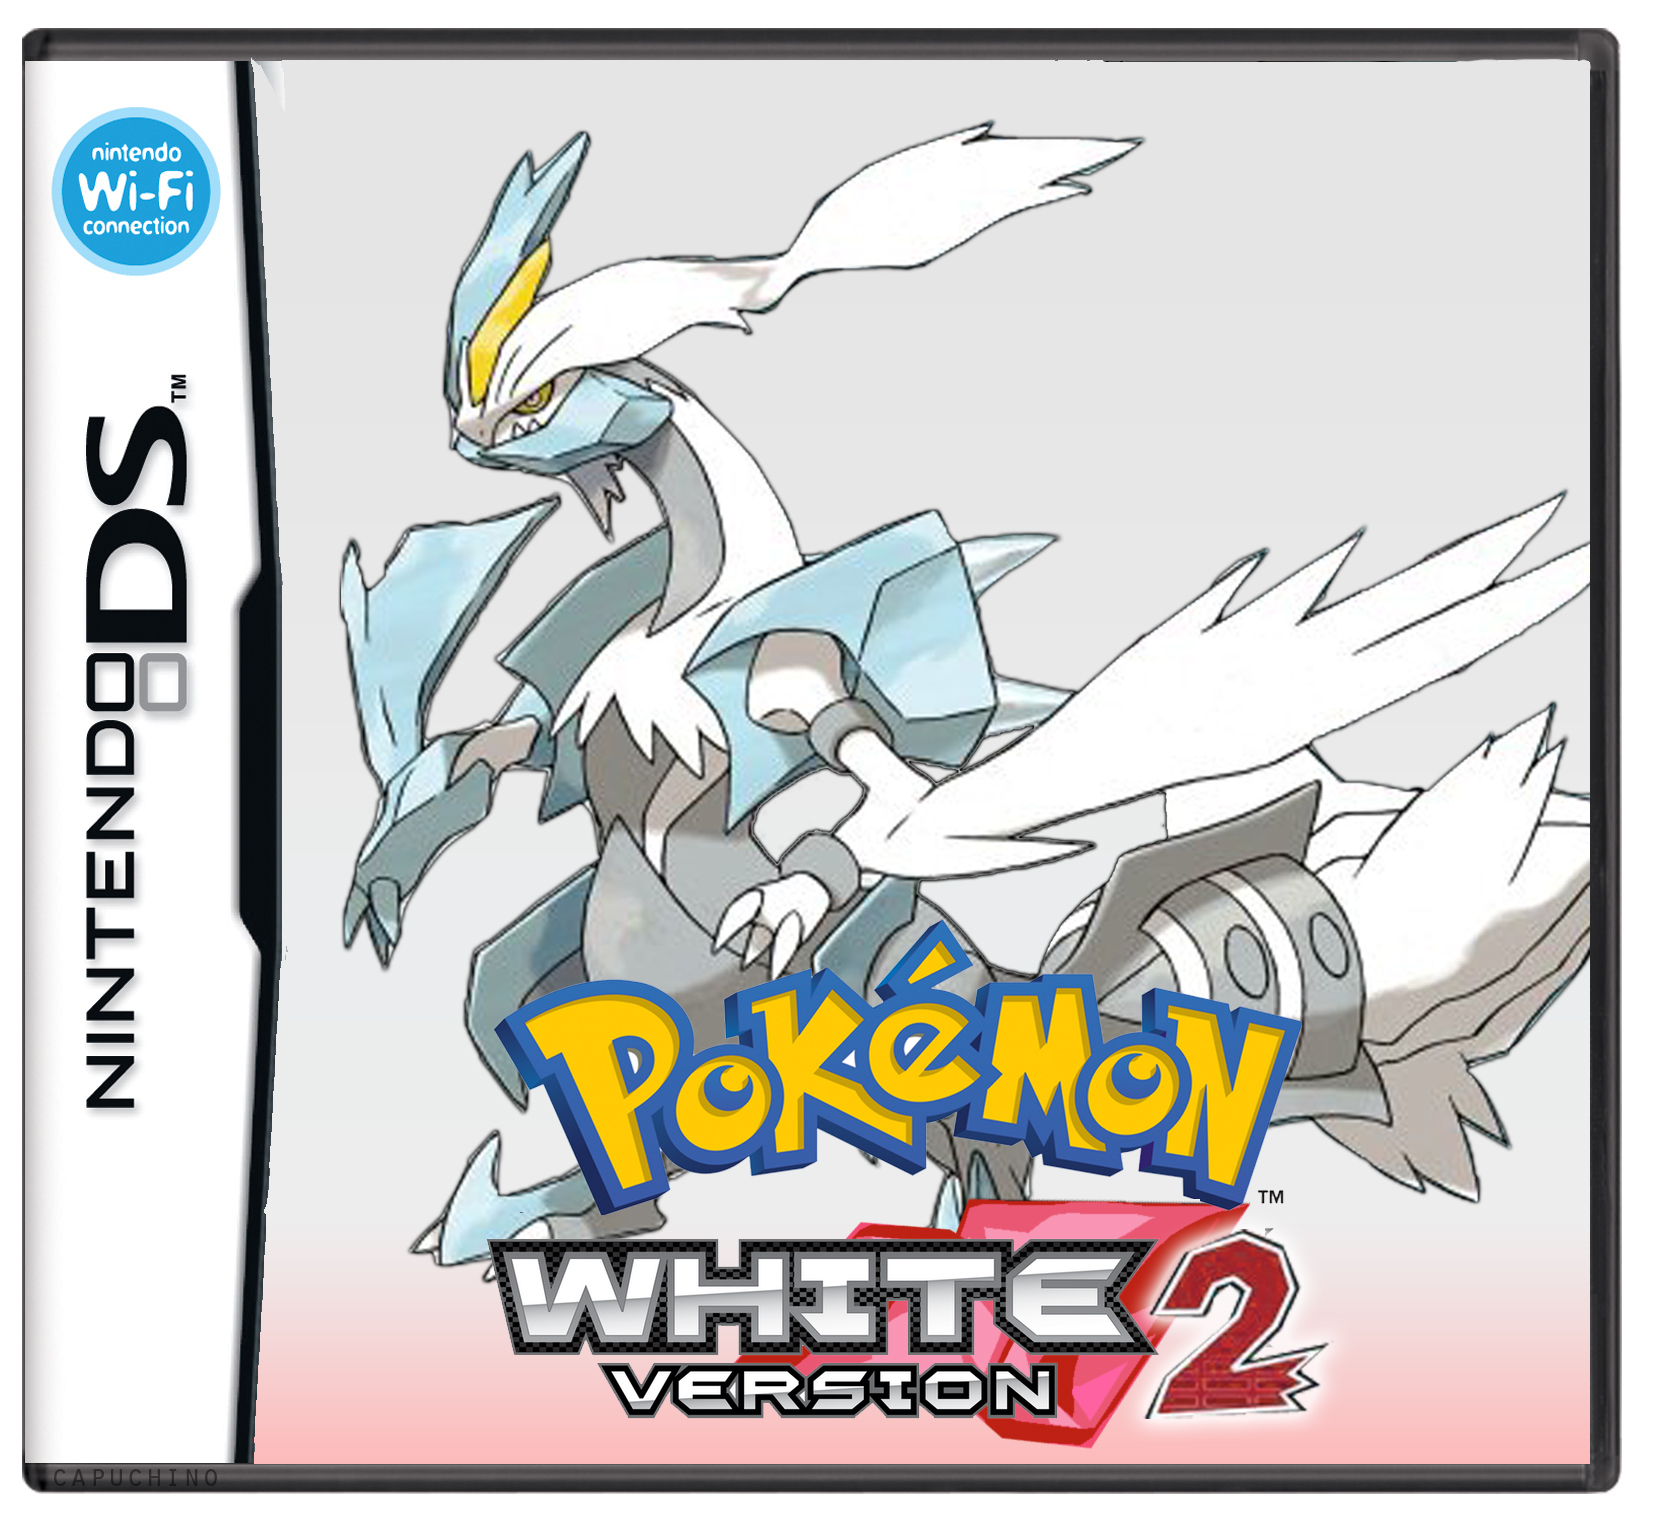 Matéria Especial: Pokémon Black 2 & Pokémon White 2! - Página 2 Pokemon_white_2_box_art